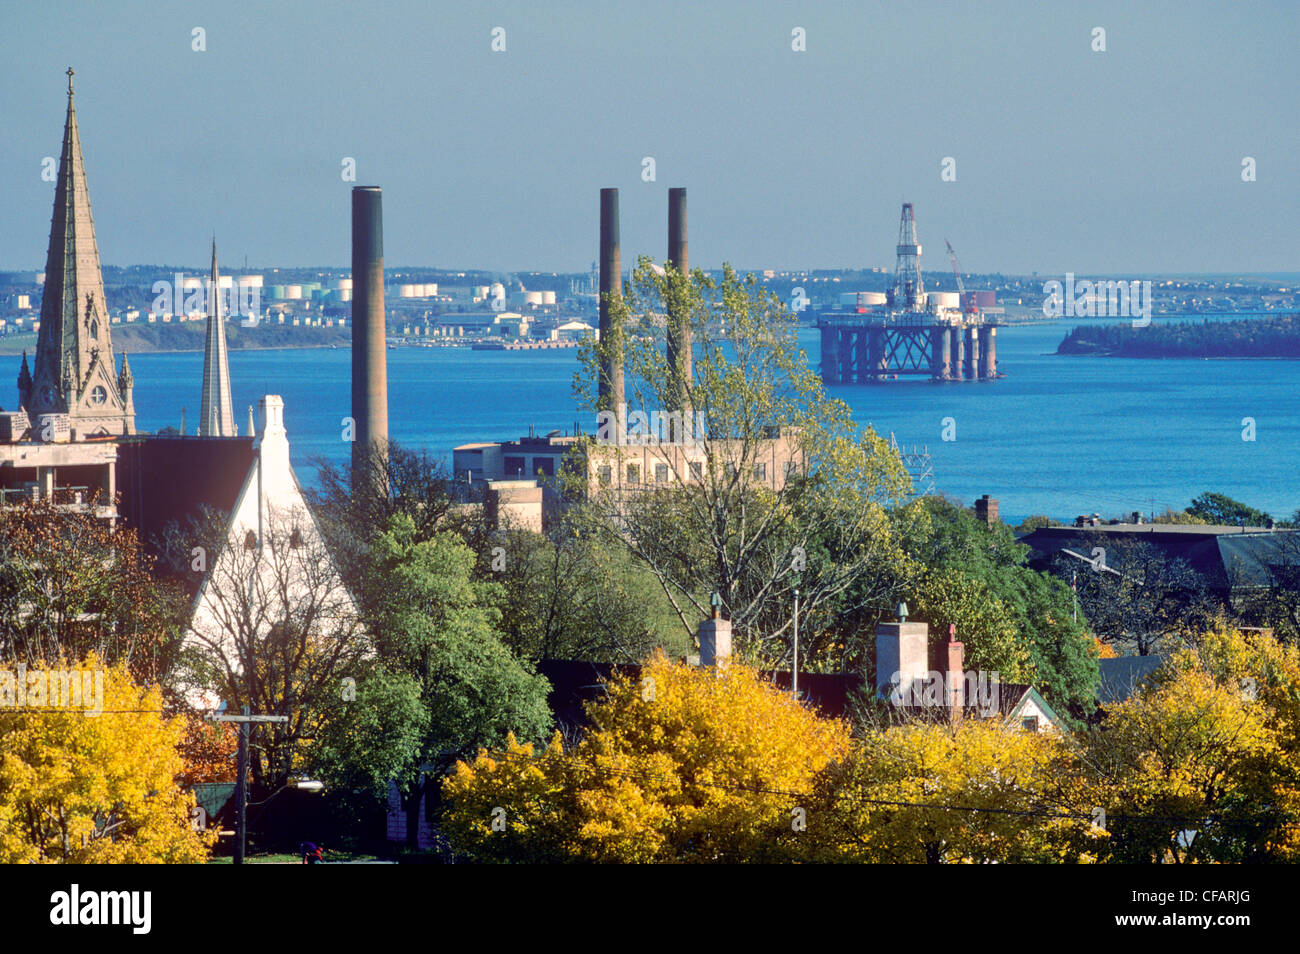 Blick auf den Hafen vom Zitadellenhügel, Halifax, Nova Scotia, Kanada. Stockfoto